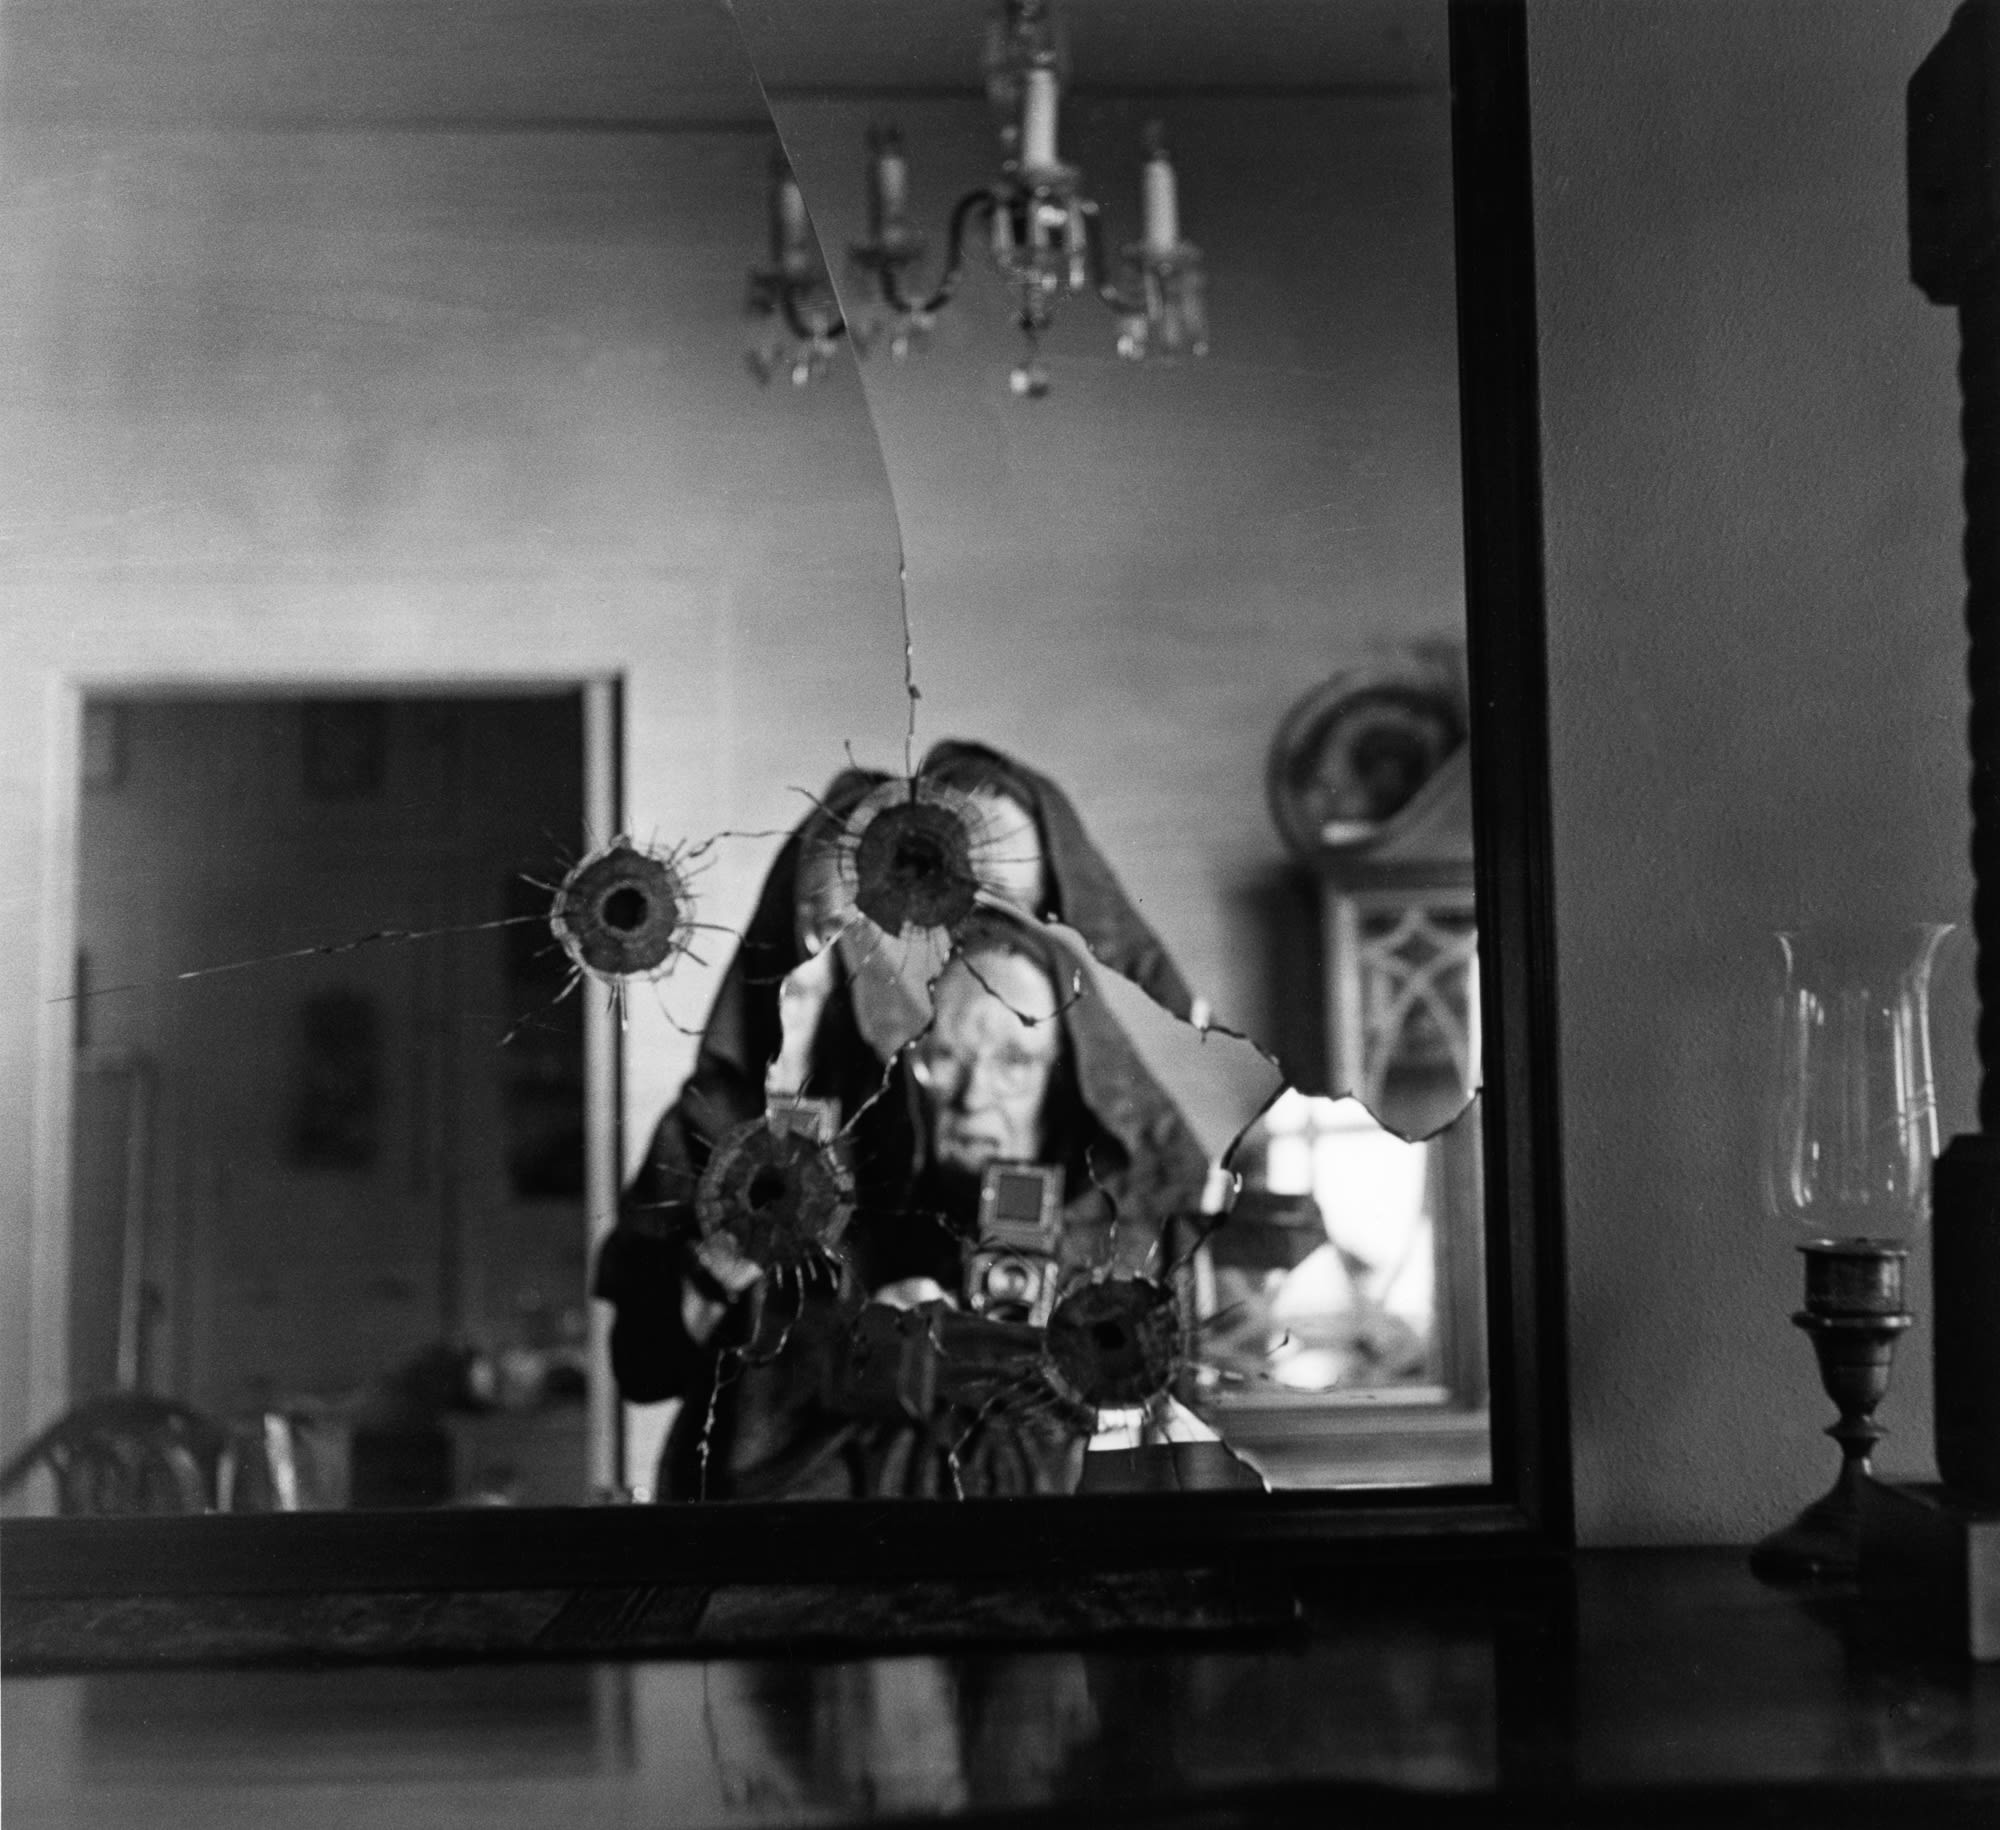 Автопортрет в разбитом зеркале, 1973. Фотограф Имоджен Каннингем